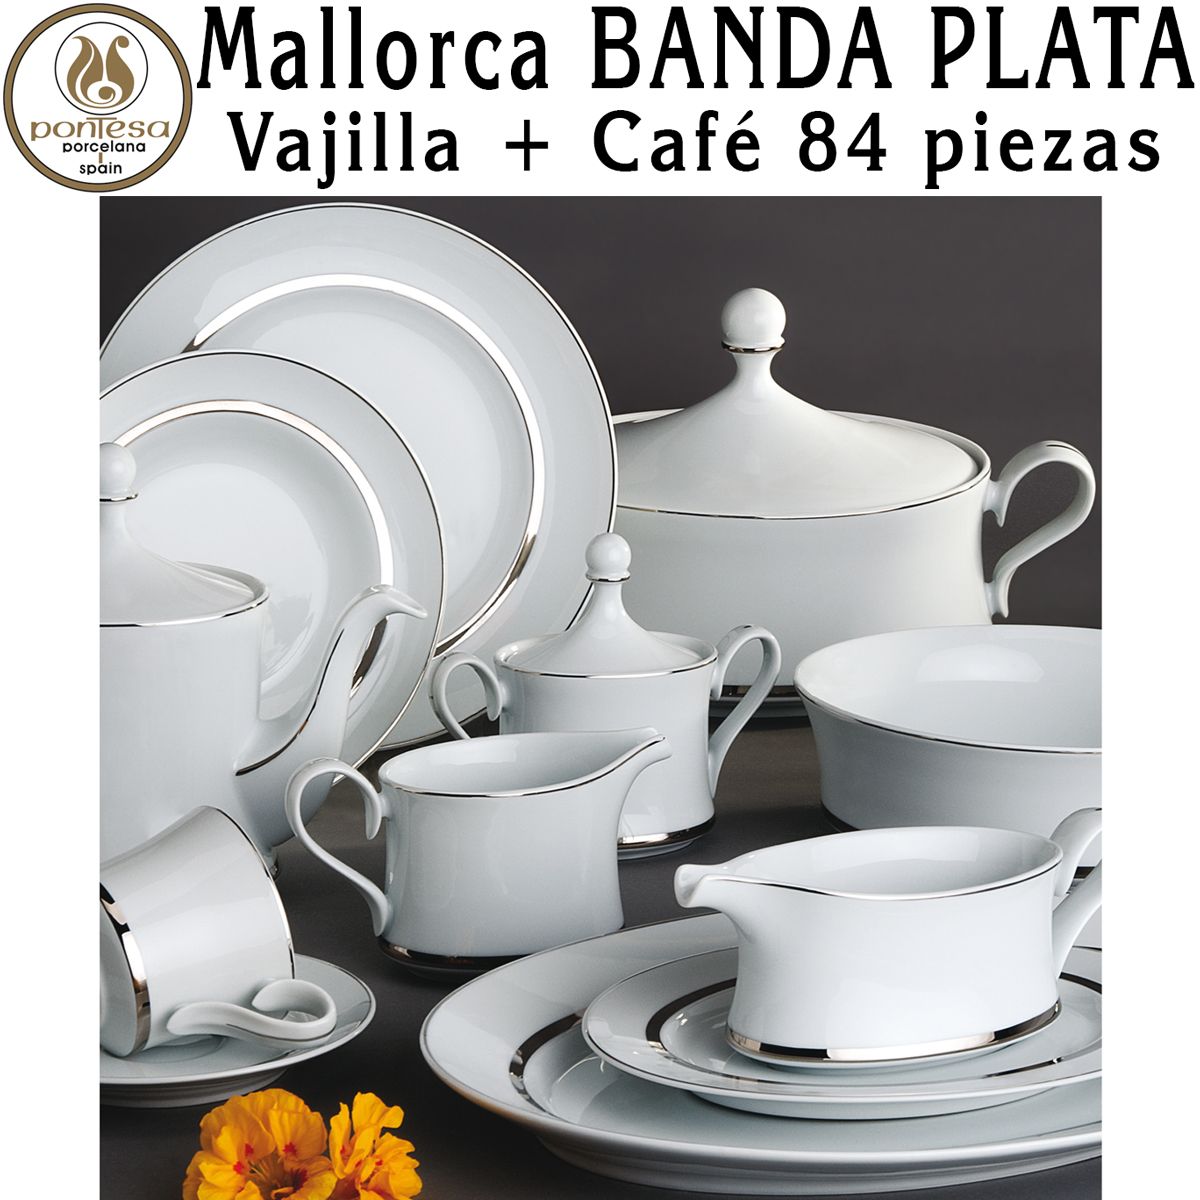 Vajilla + Café 84 piezas Santa Clara Mallorca Banda Plata